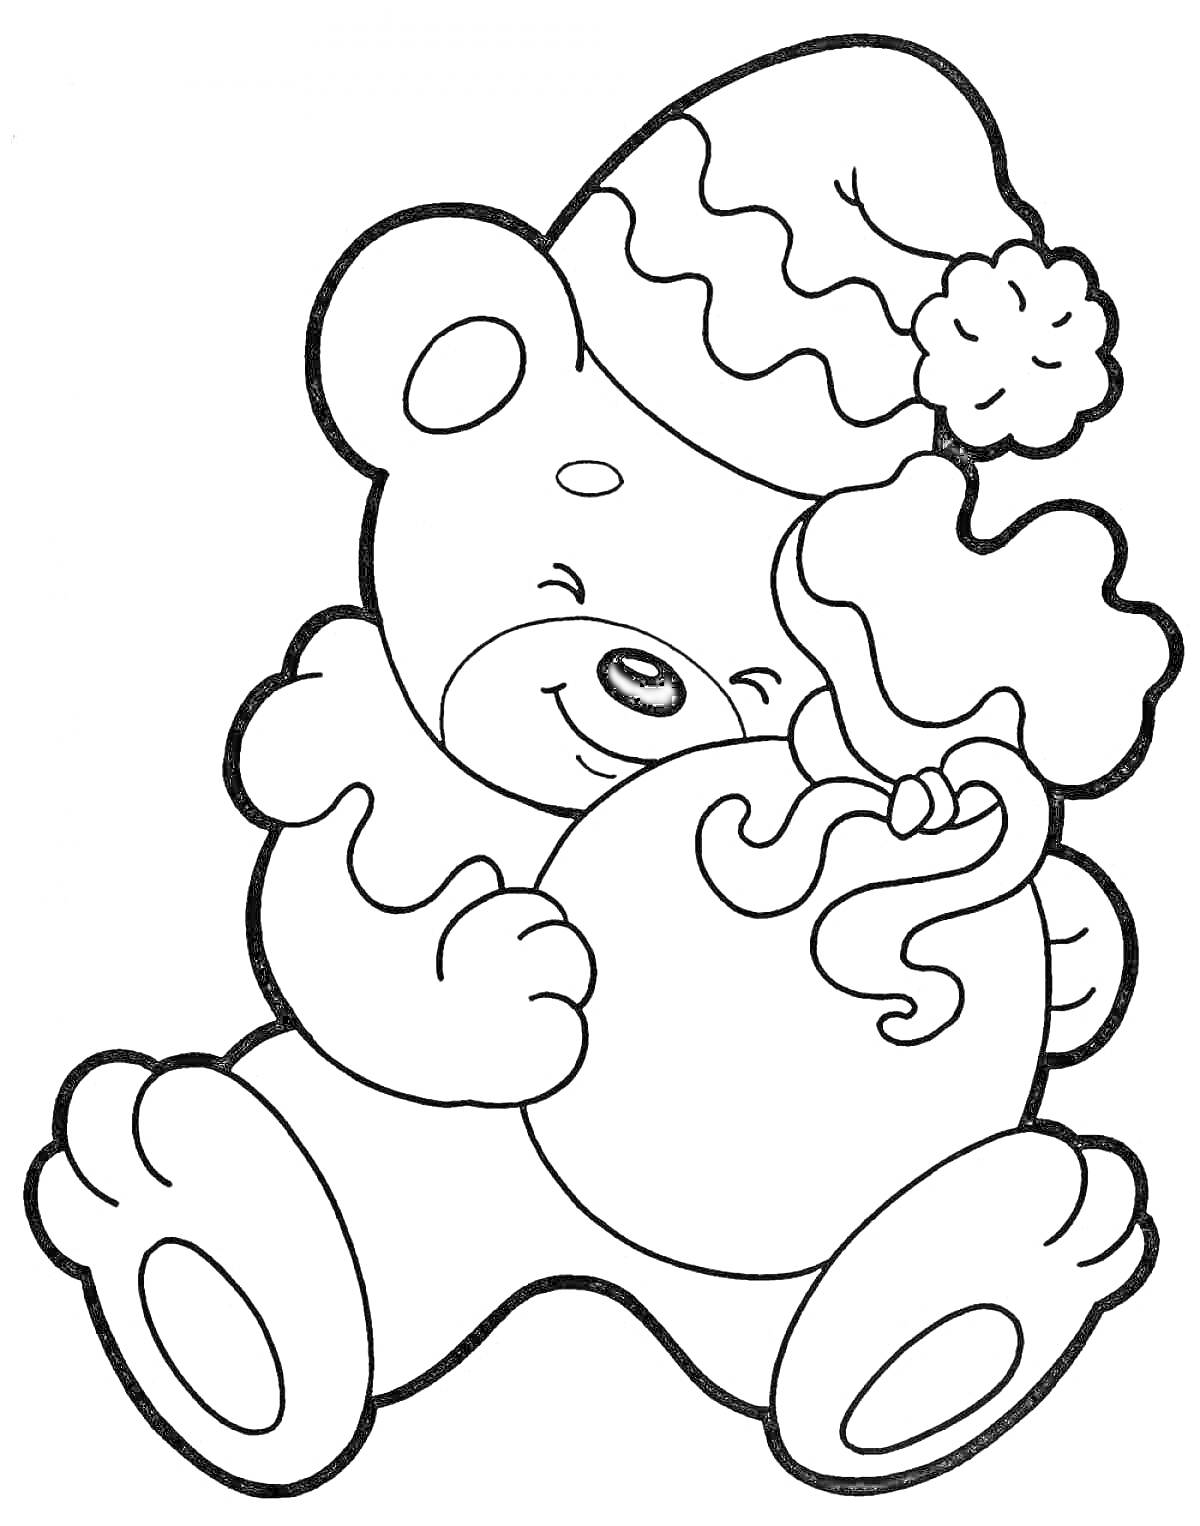 Раскраска Медвежонок в праздничной шапке с мешком